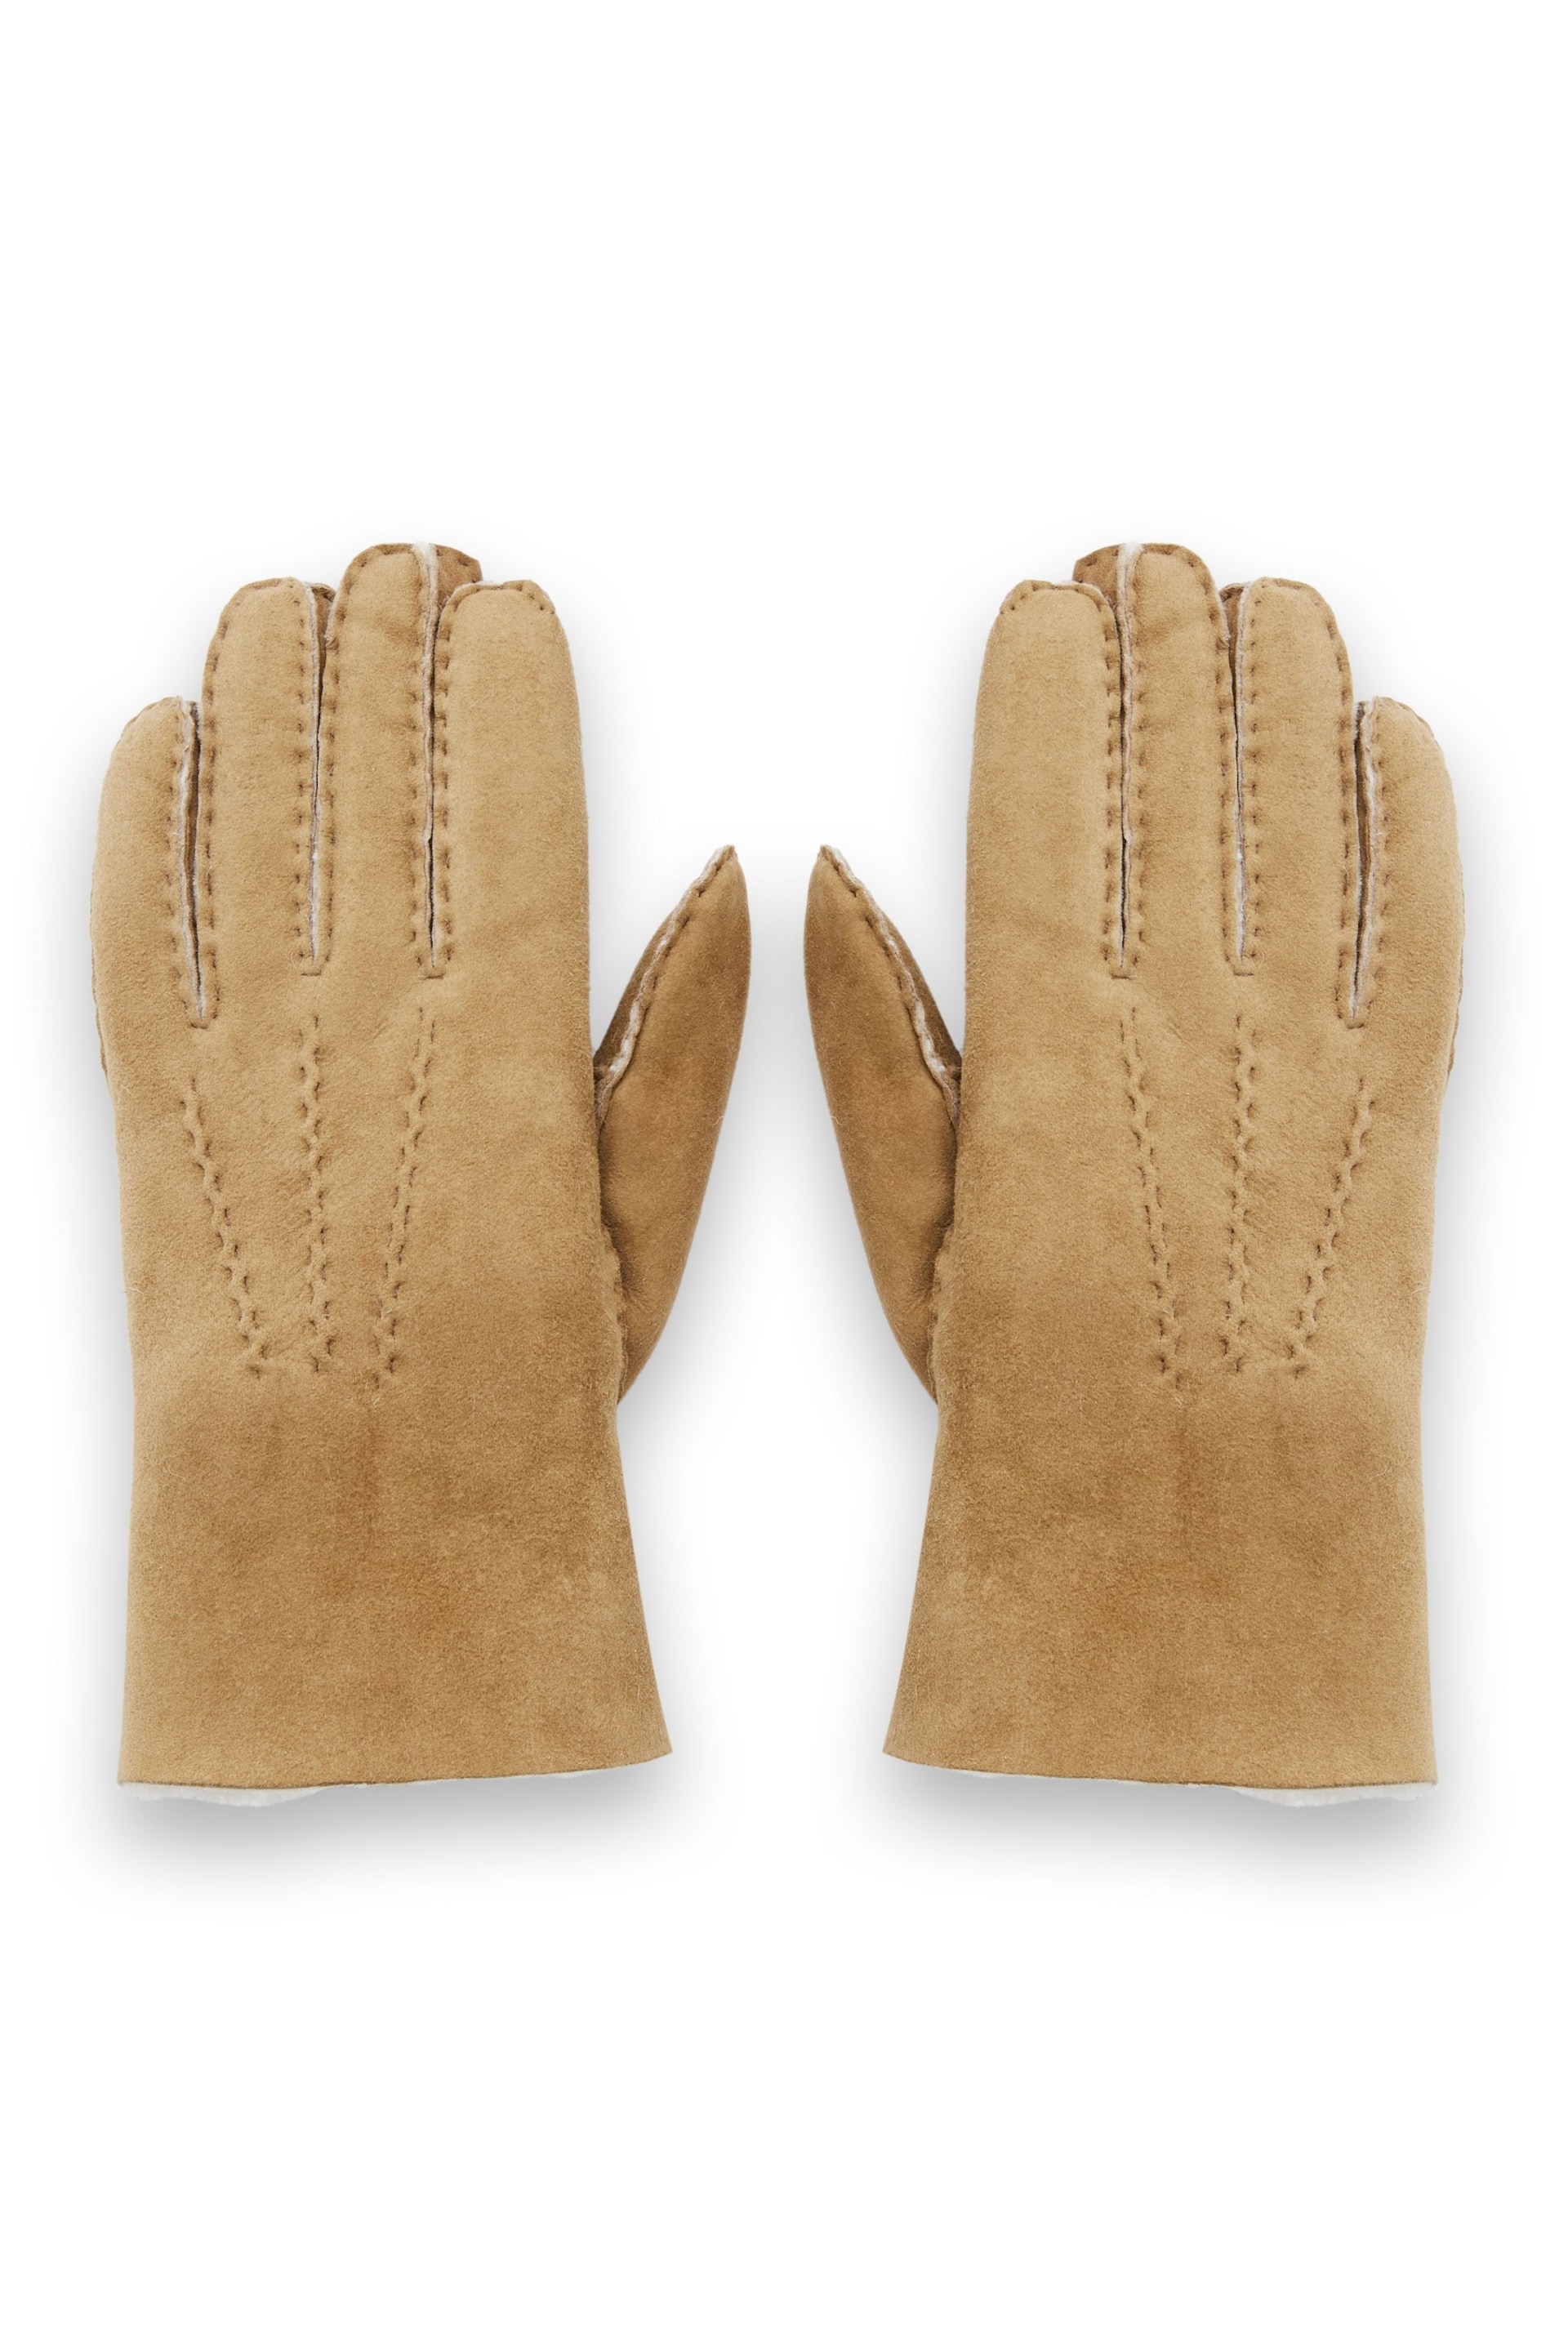 Celtic & Co. Natural Sheepskin Gloves - Image 3 of 4